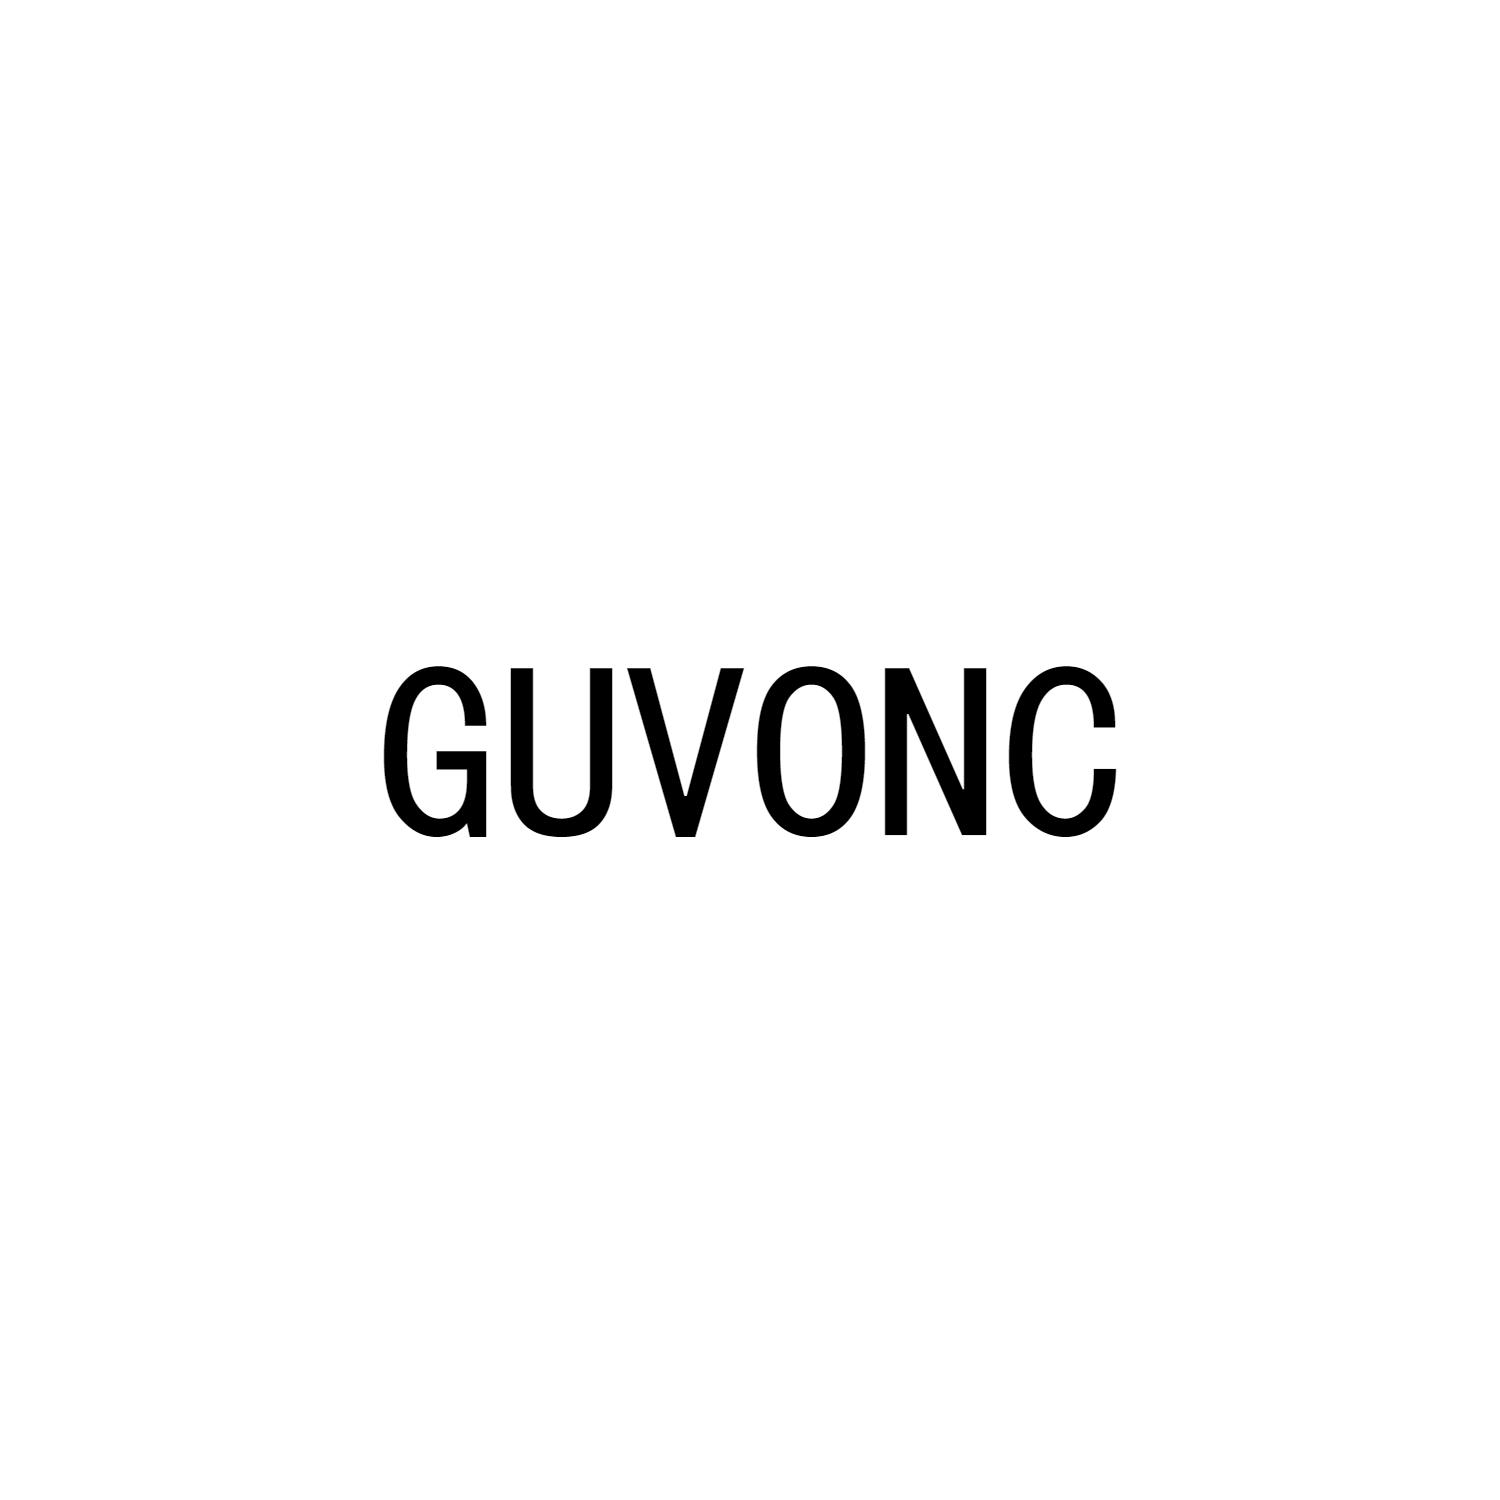 GUVONC